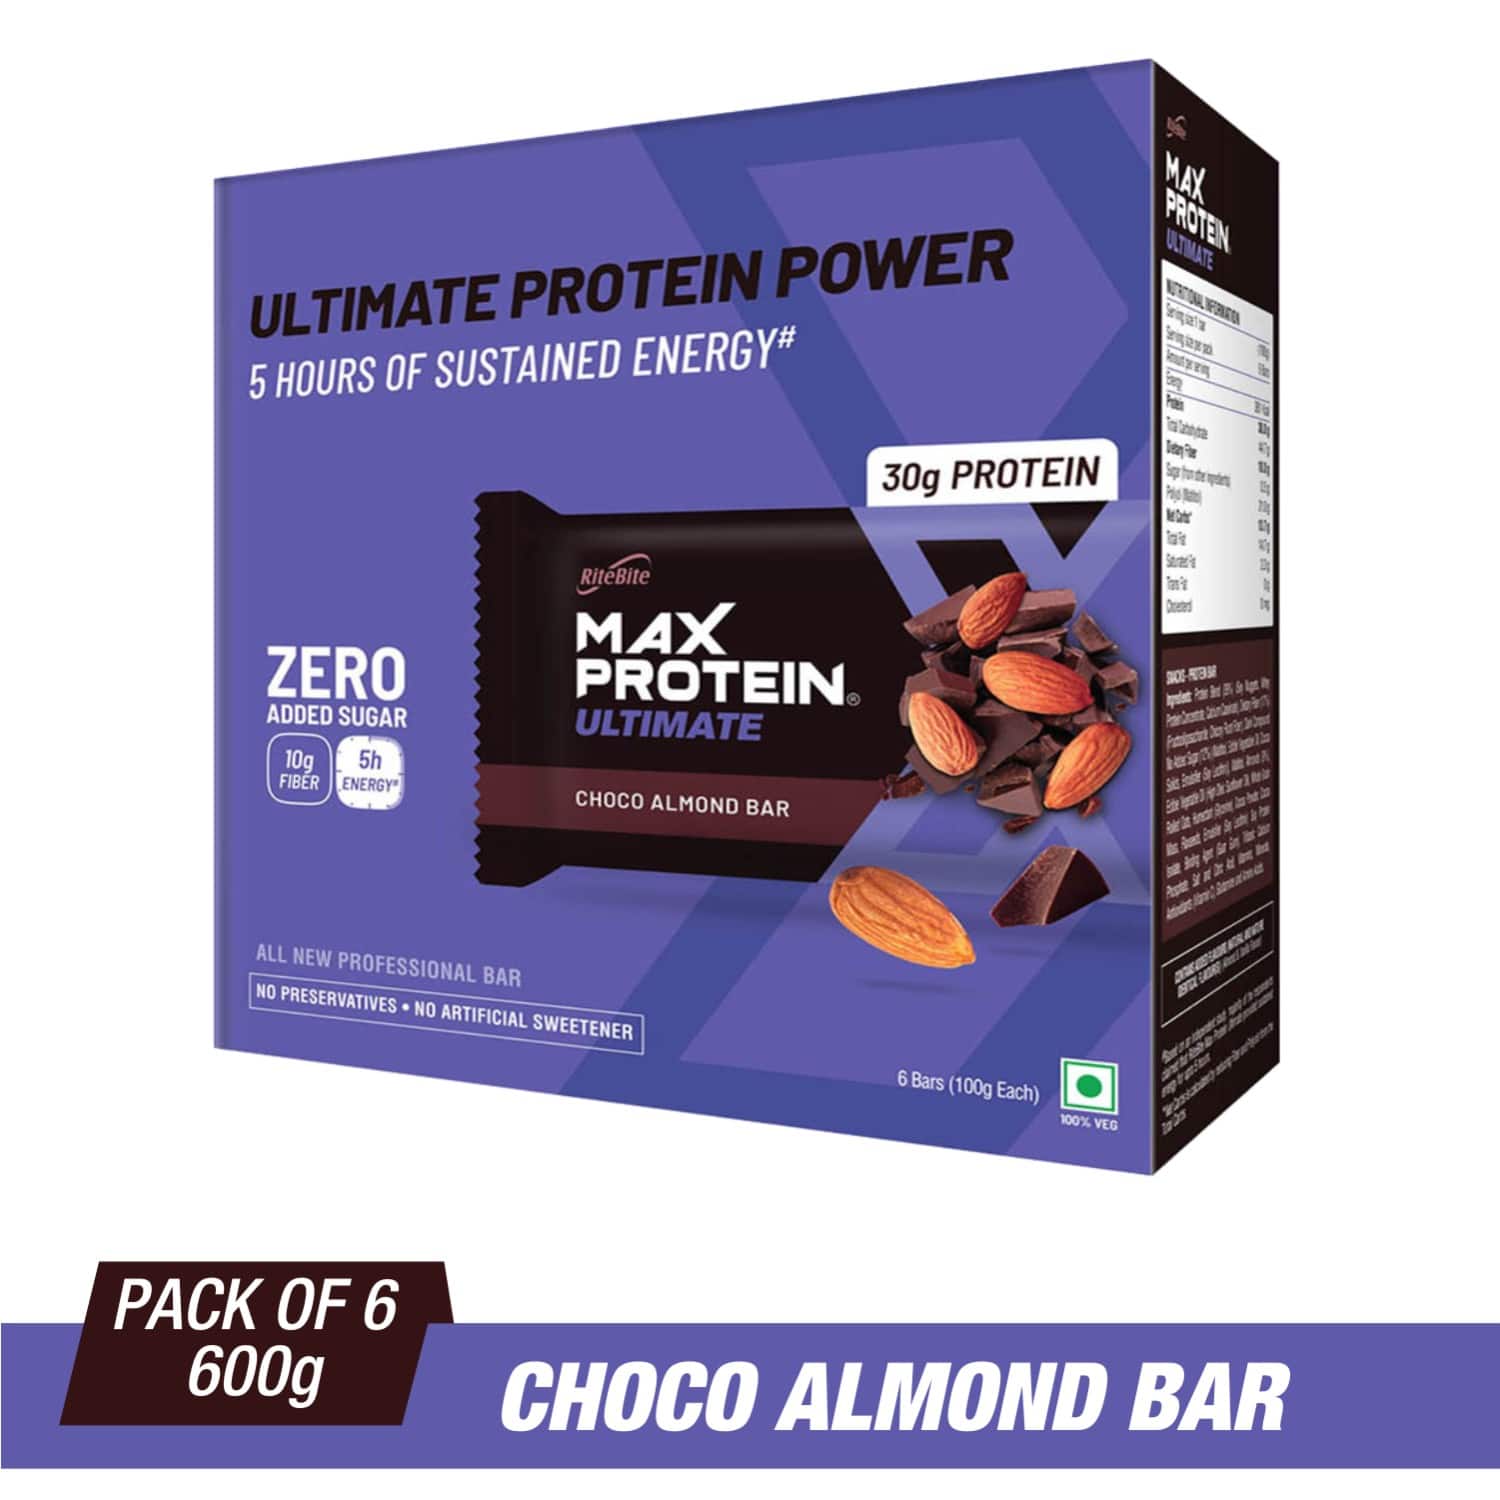 Ritebite Max Protein Ultimate Choco Almond